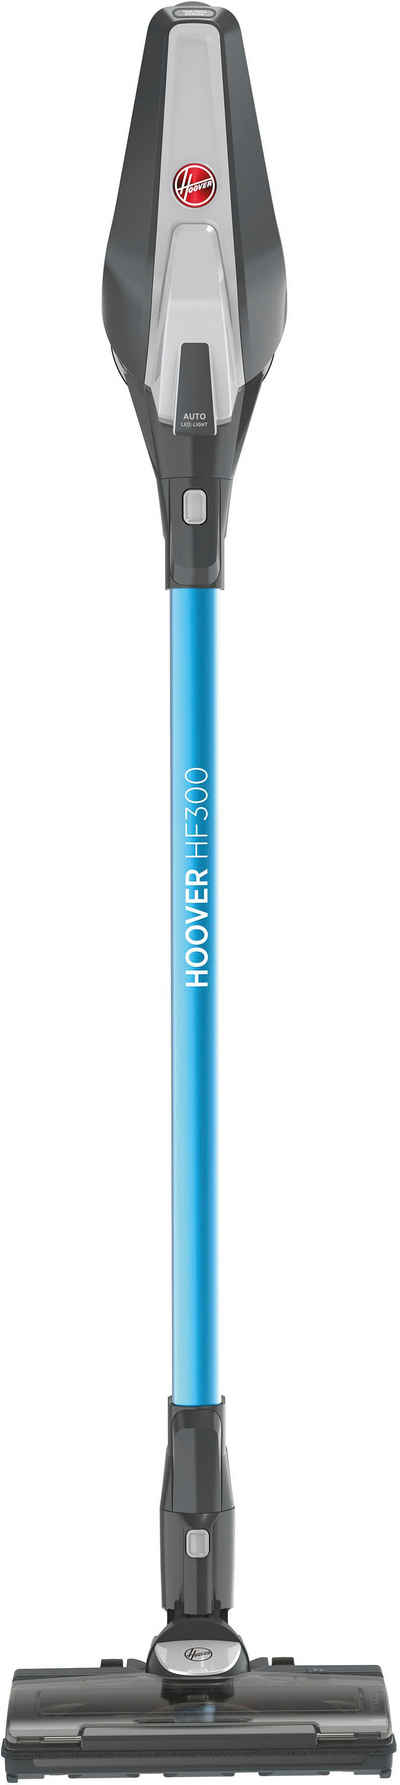 Hoover Akku-Stielstaubsauger HF322TP 011, 240 W, beutellos